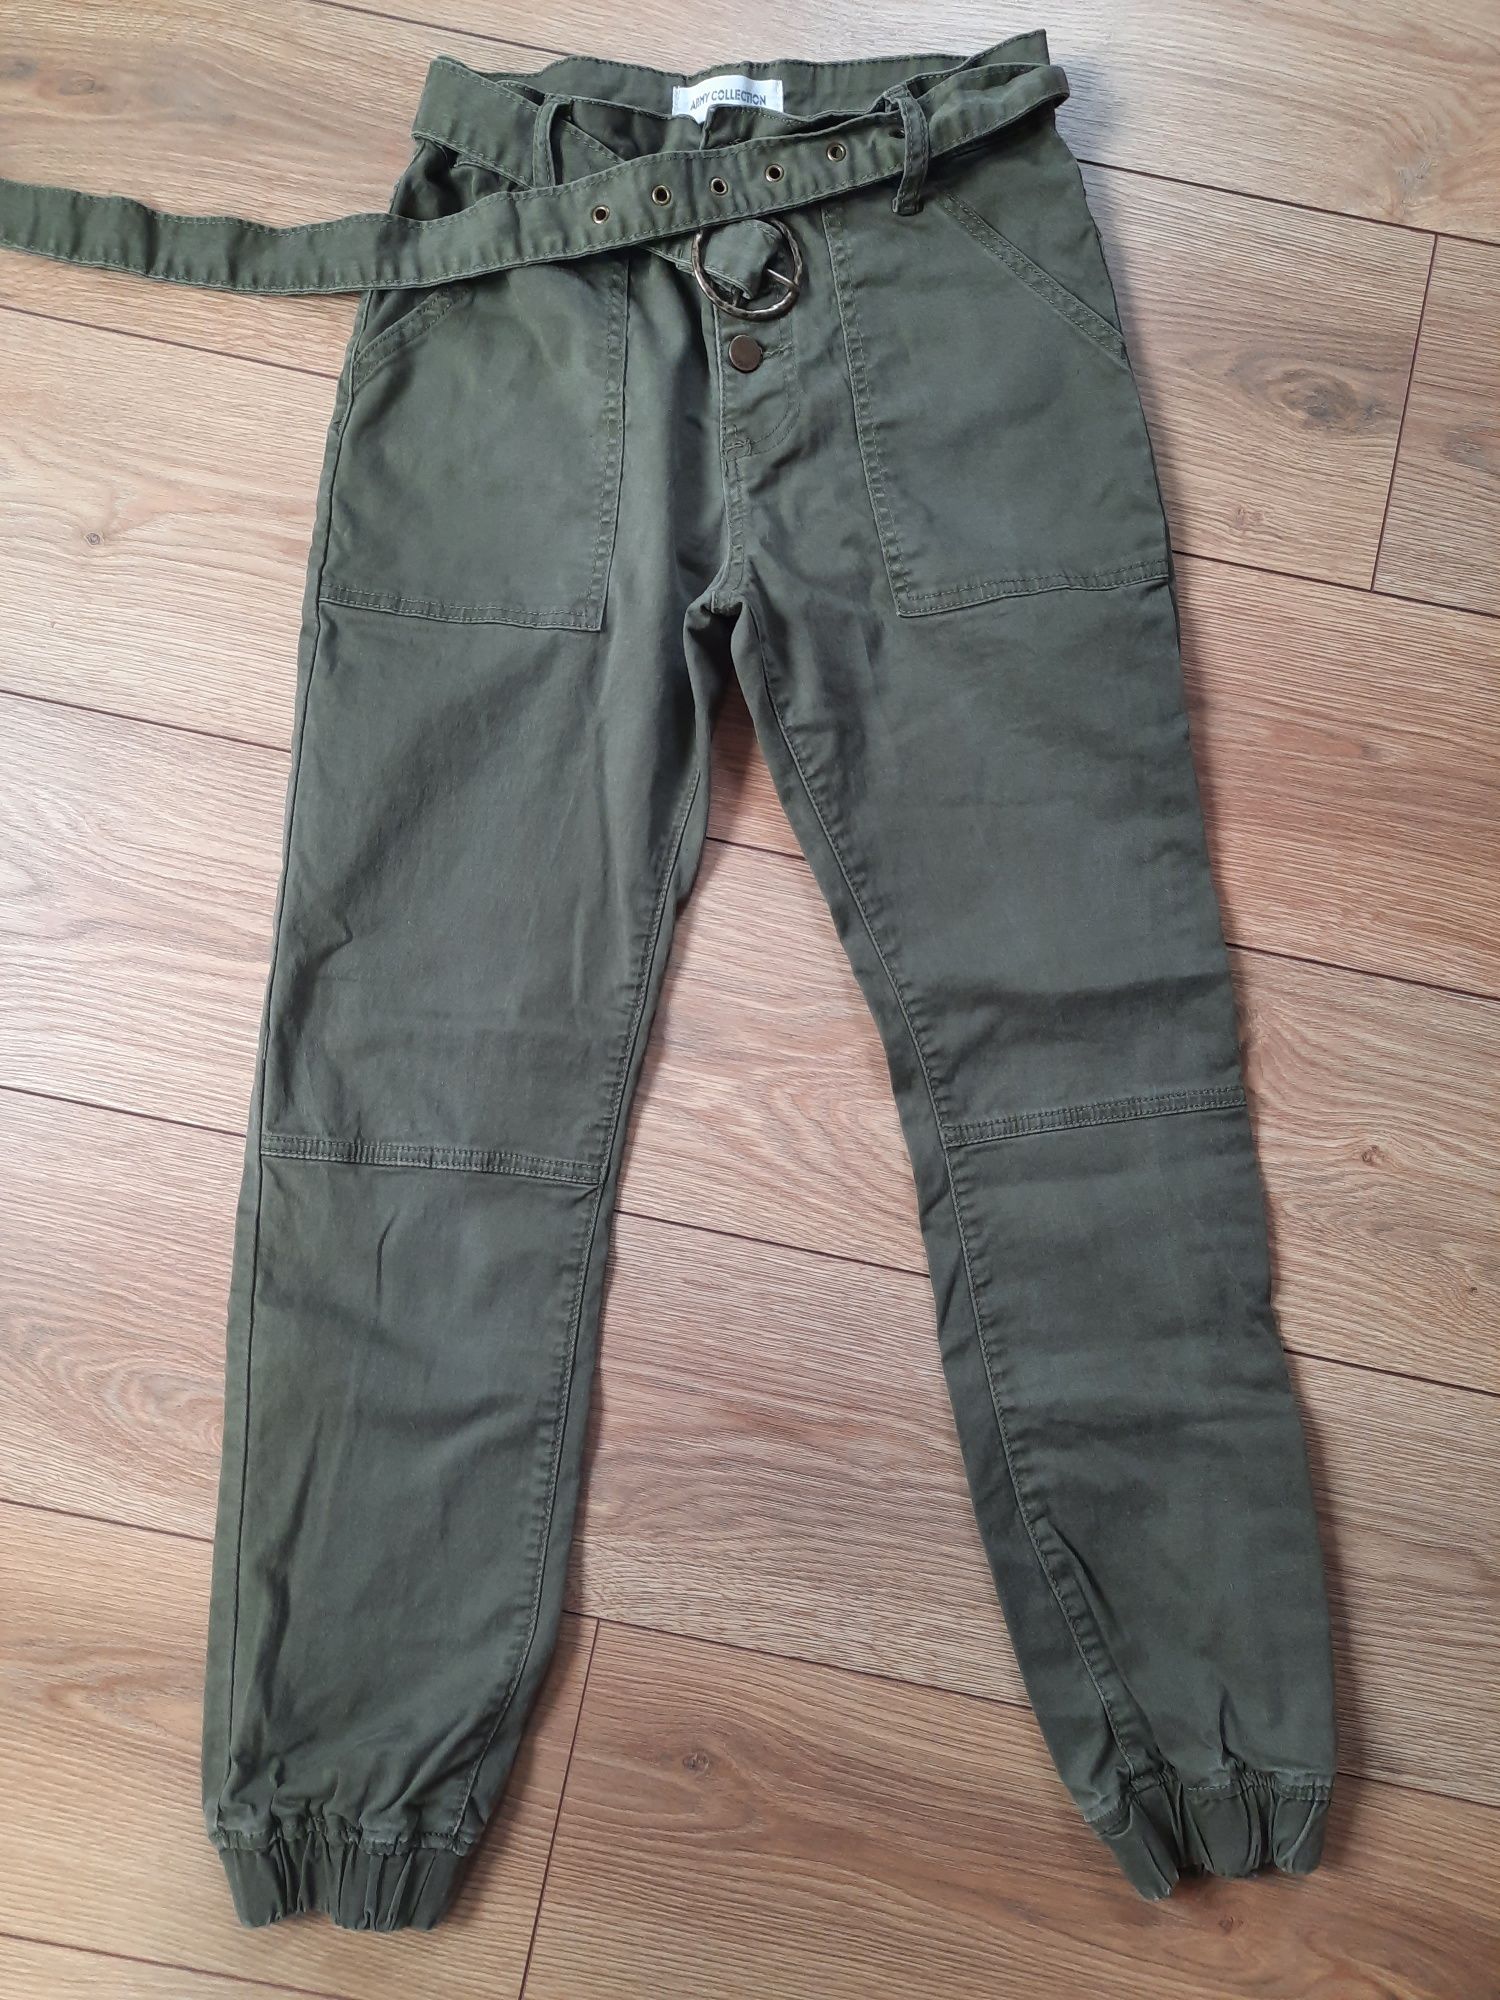 Wojskowy styl, spodnie Army Collection, r. 36